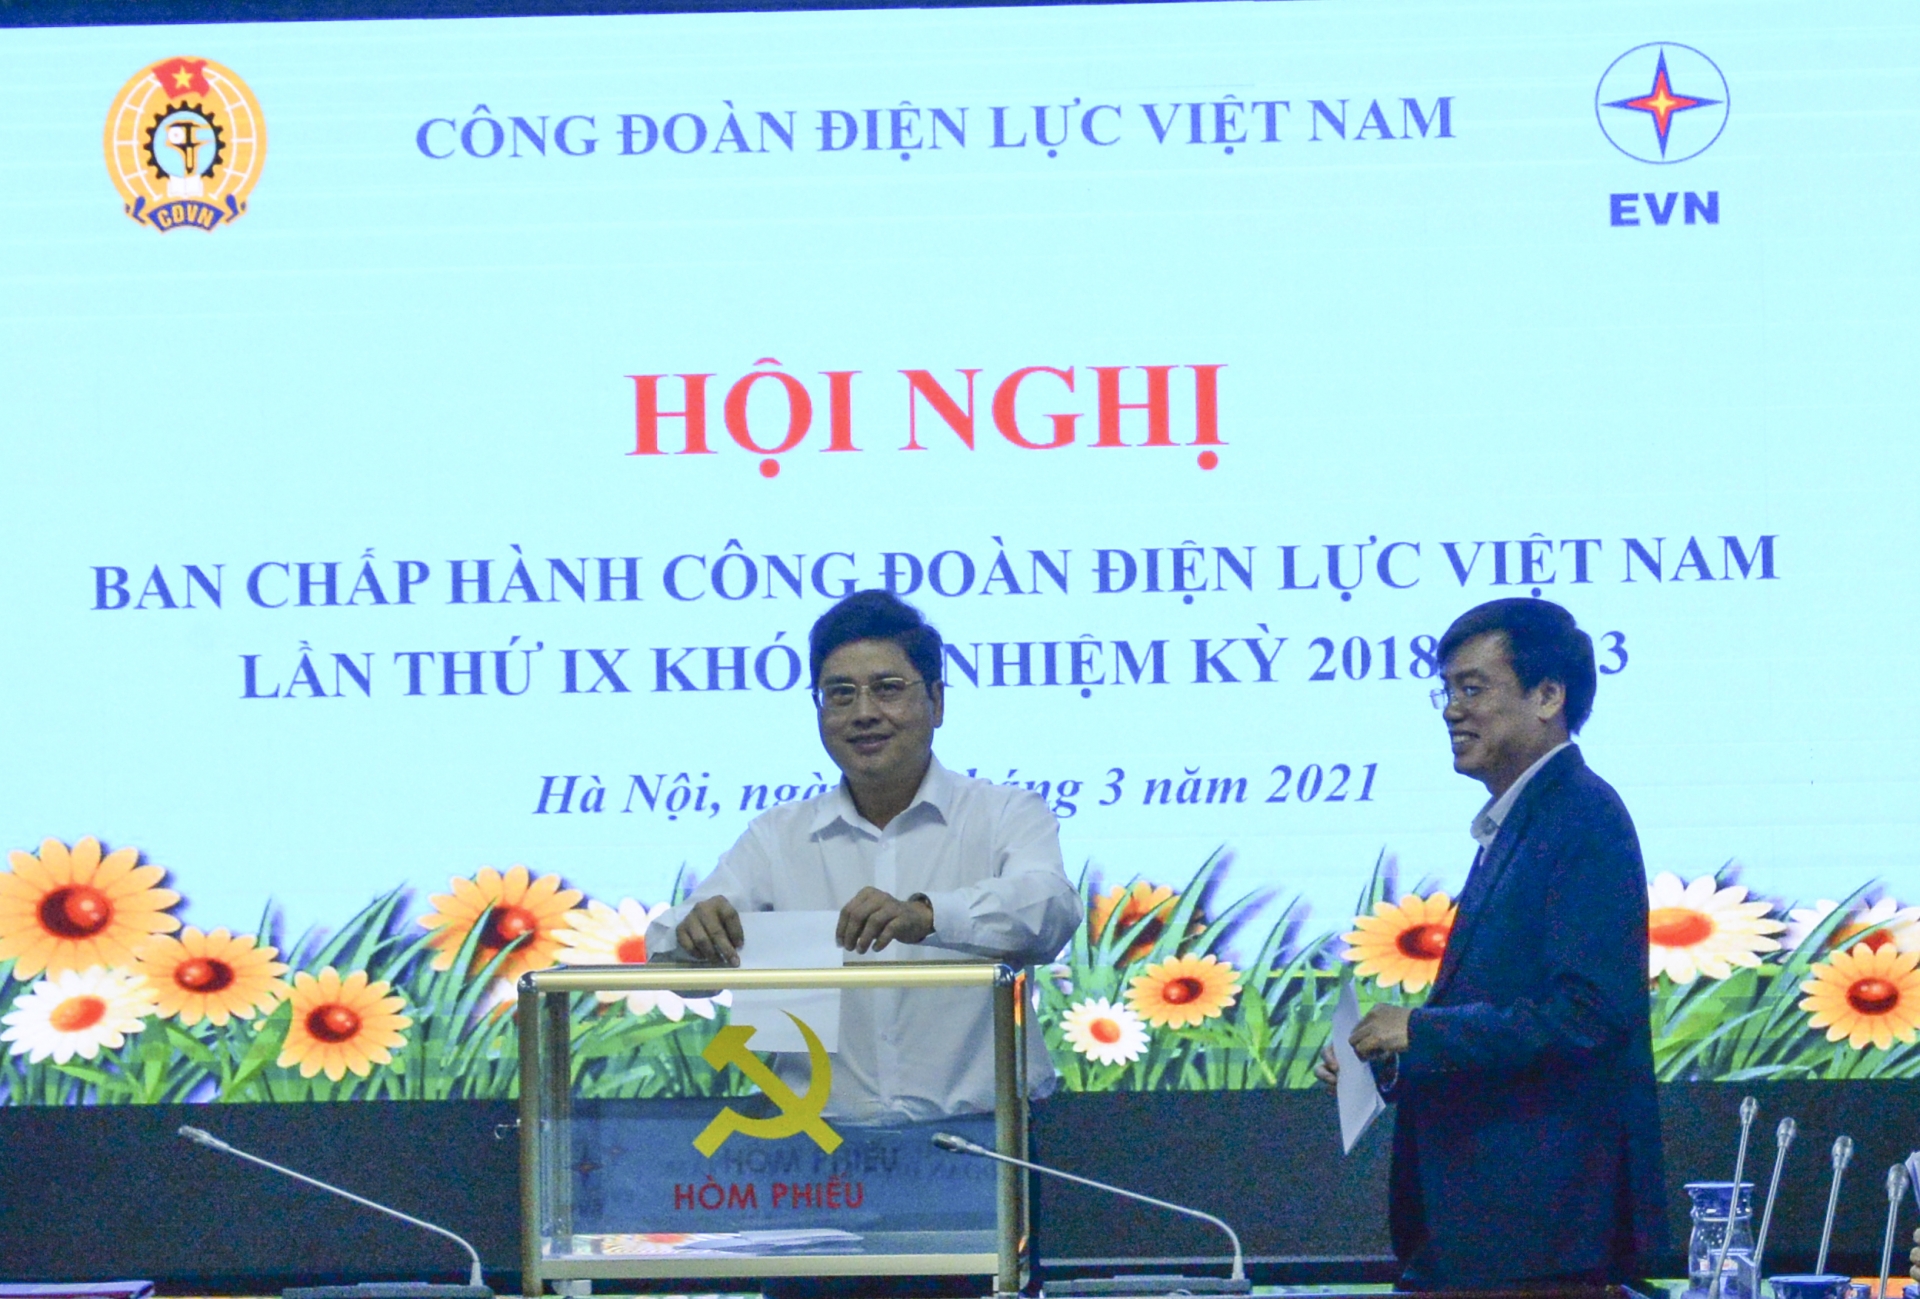 Đồng chí Uông Quang Huy được bầu là Phó Chủ tịch Công đoàn Điện lực Việt Nam